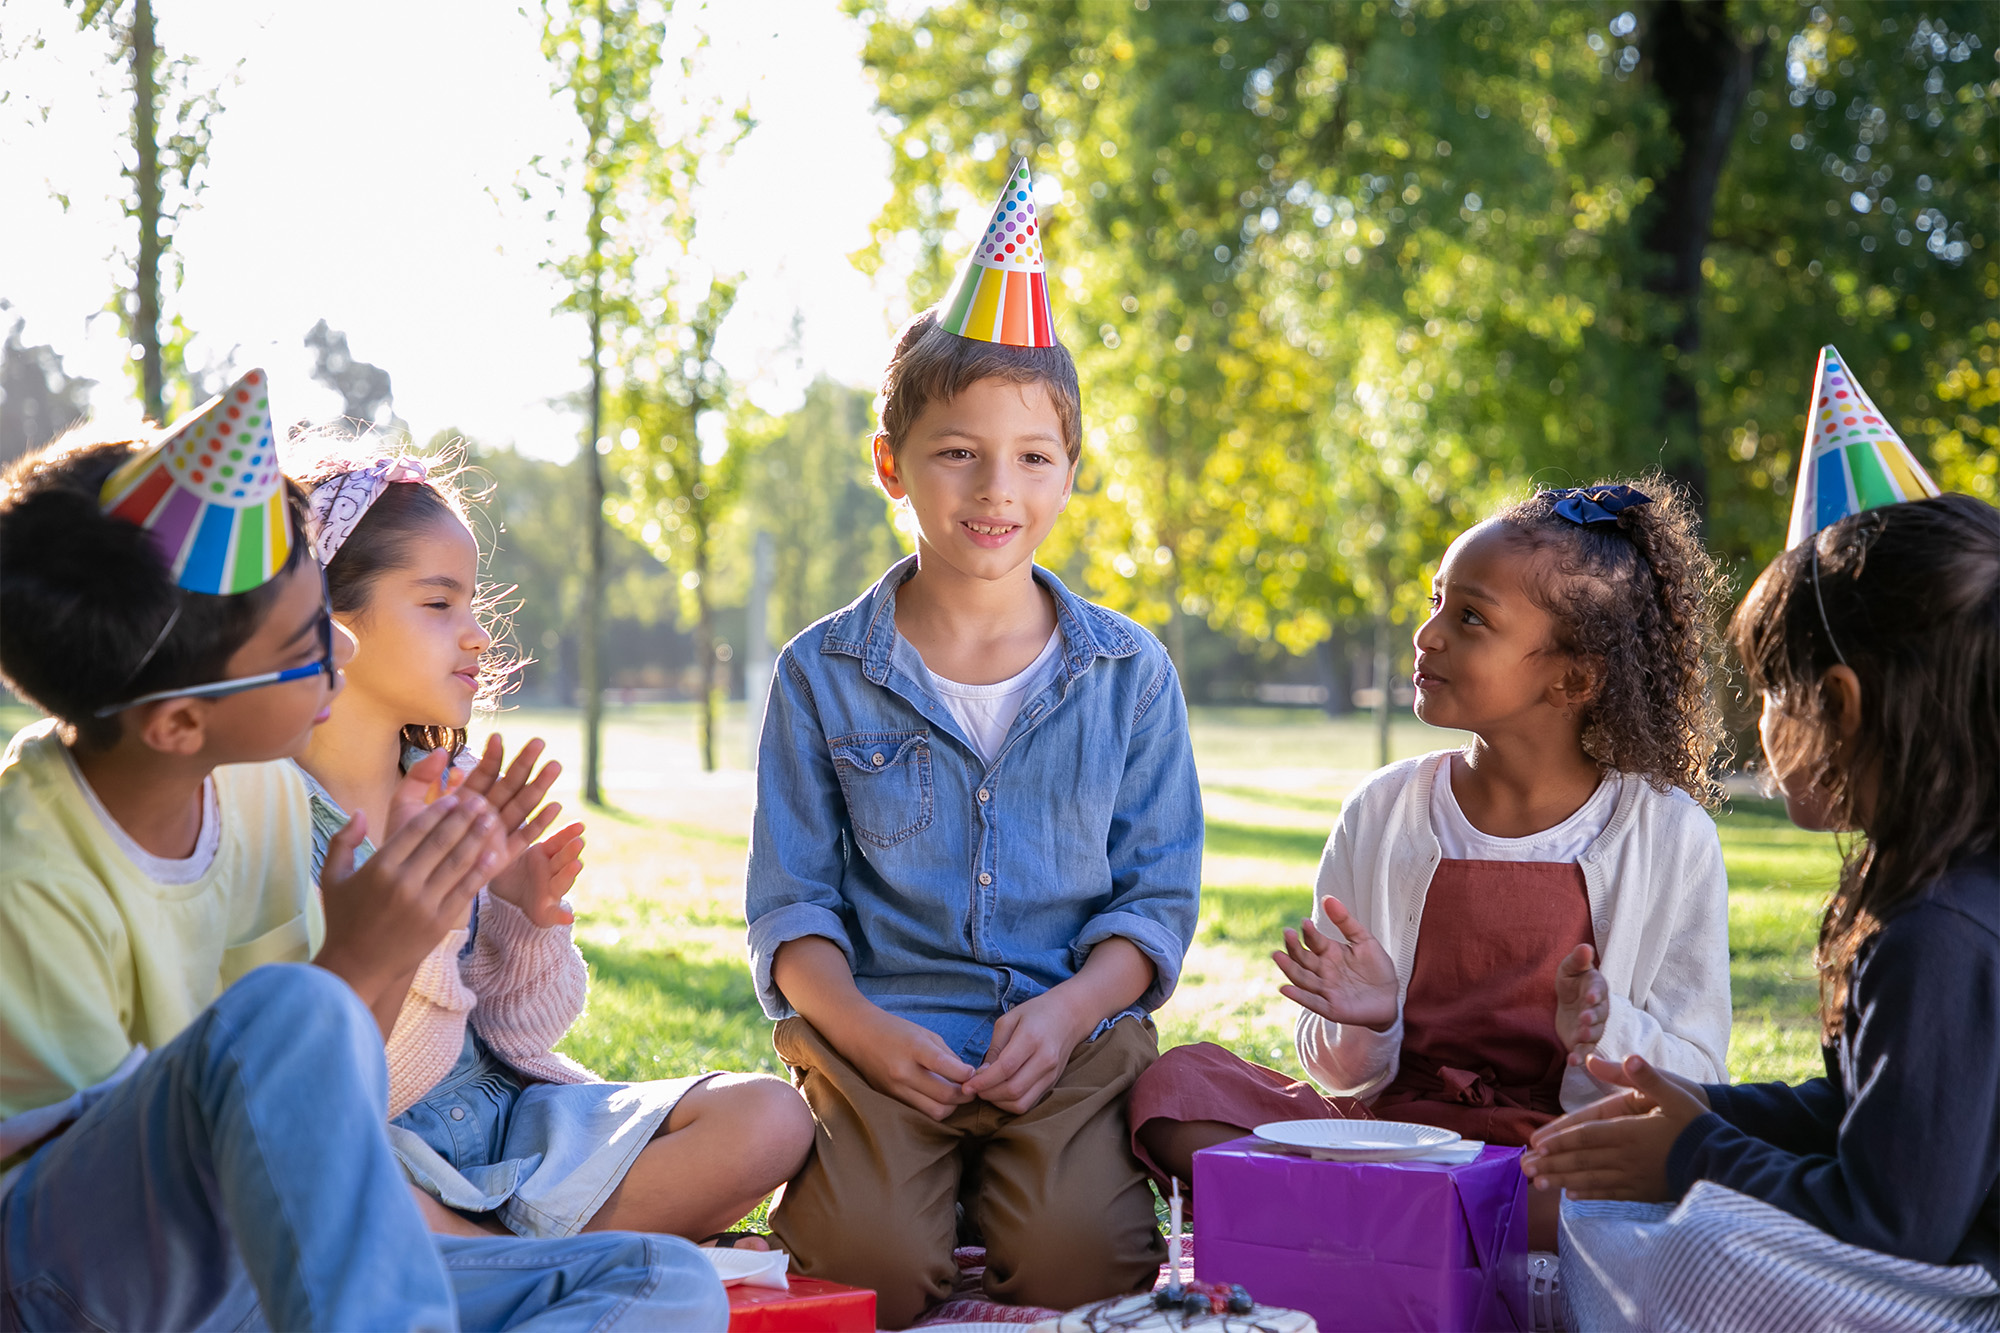 20 ideas fáciles y económicas para entretener a niños en fiestas